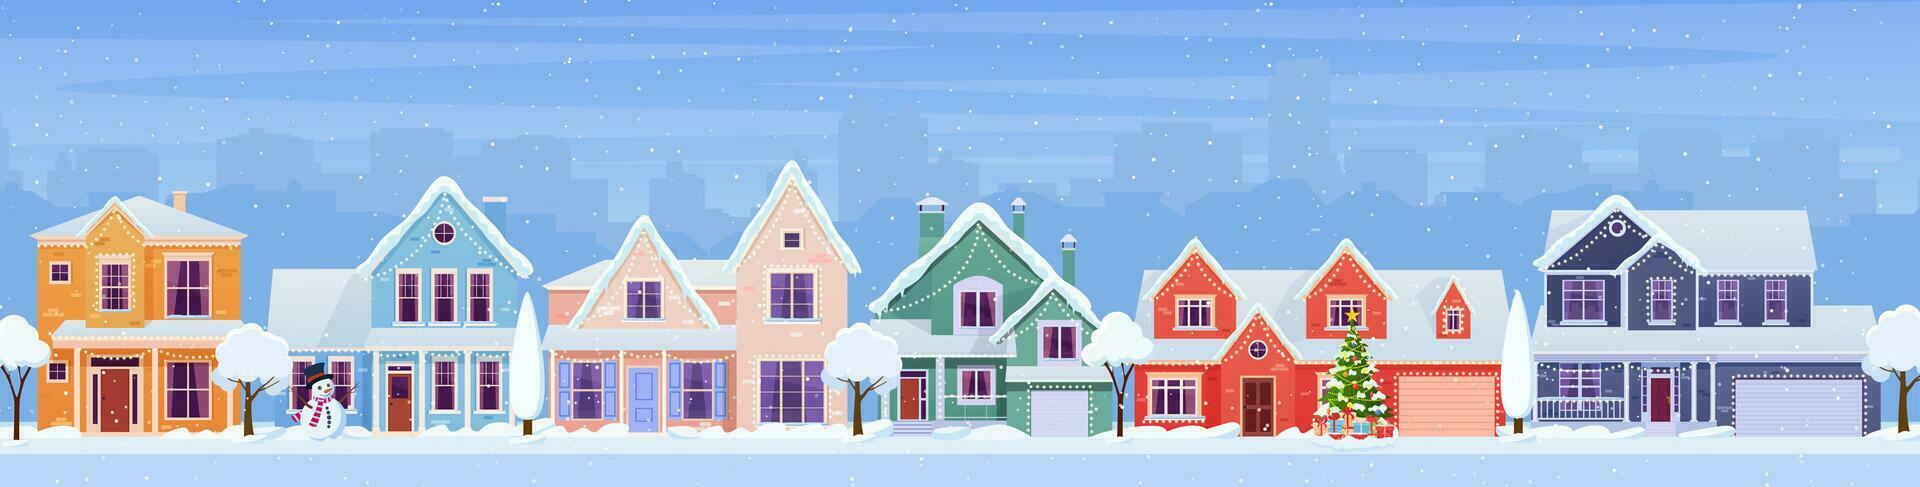 Résidentiel Maisons avec Noël décoration à journée. dessin animé hiver paysage rue avec neige sur toits et vacances guirlandes, Noël arbre, bonhomme de neige. vecteur illustration